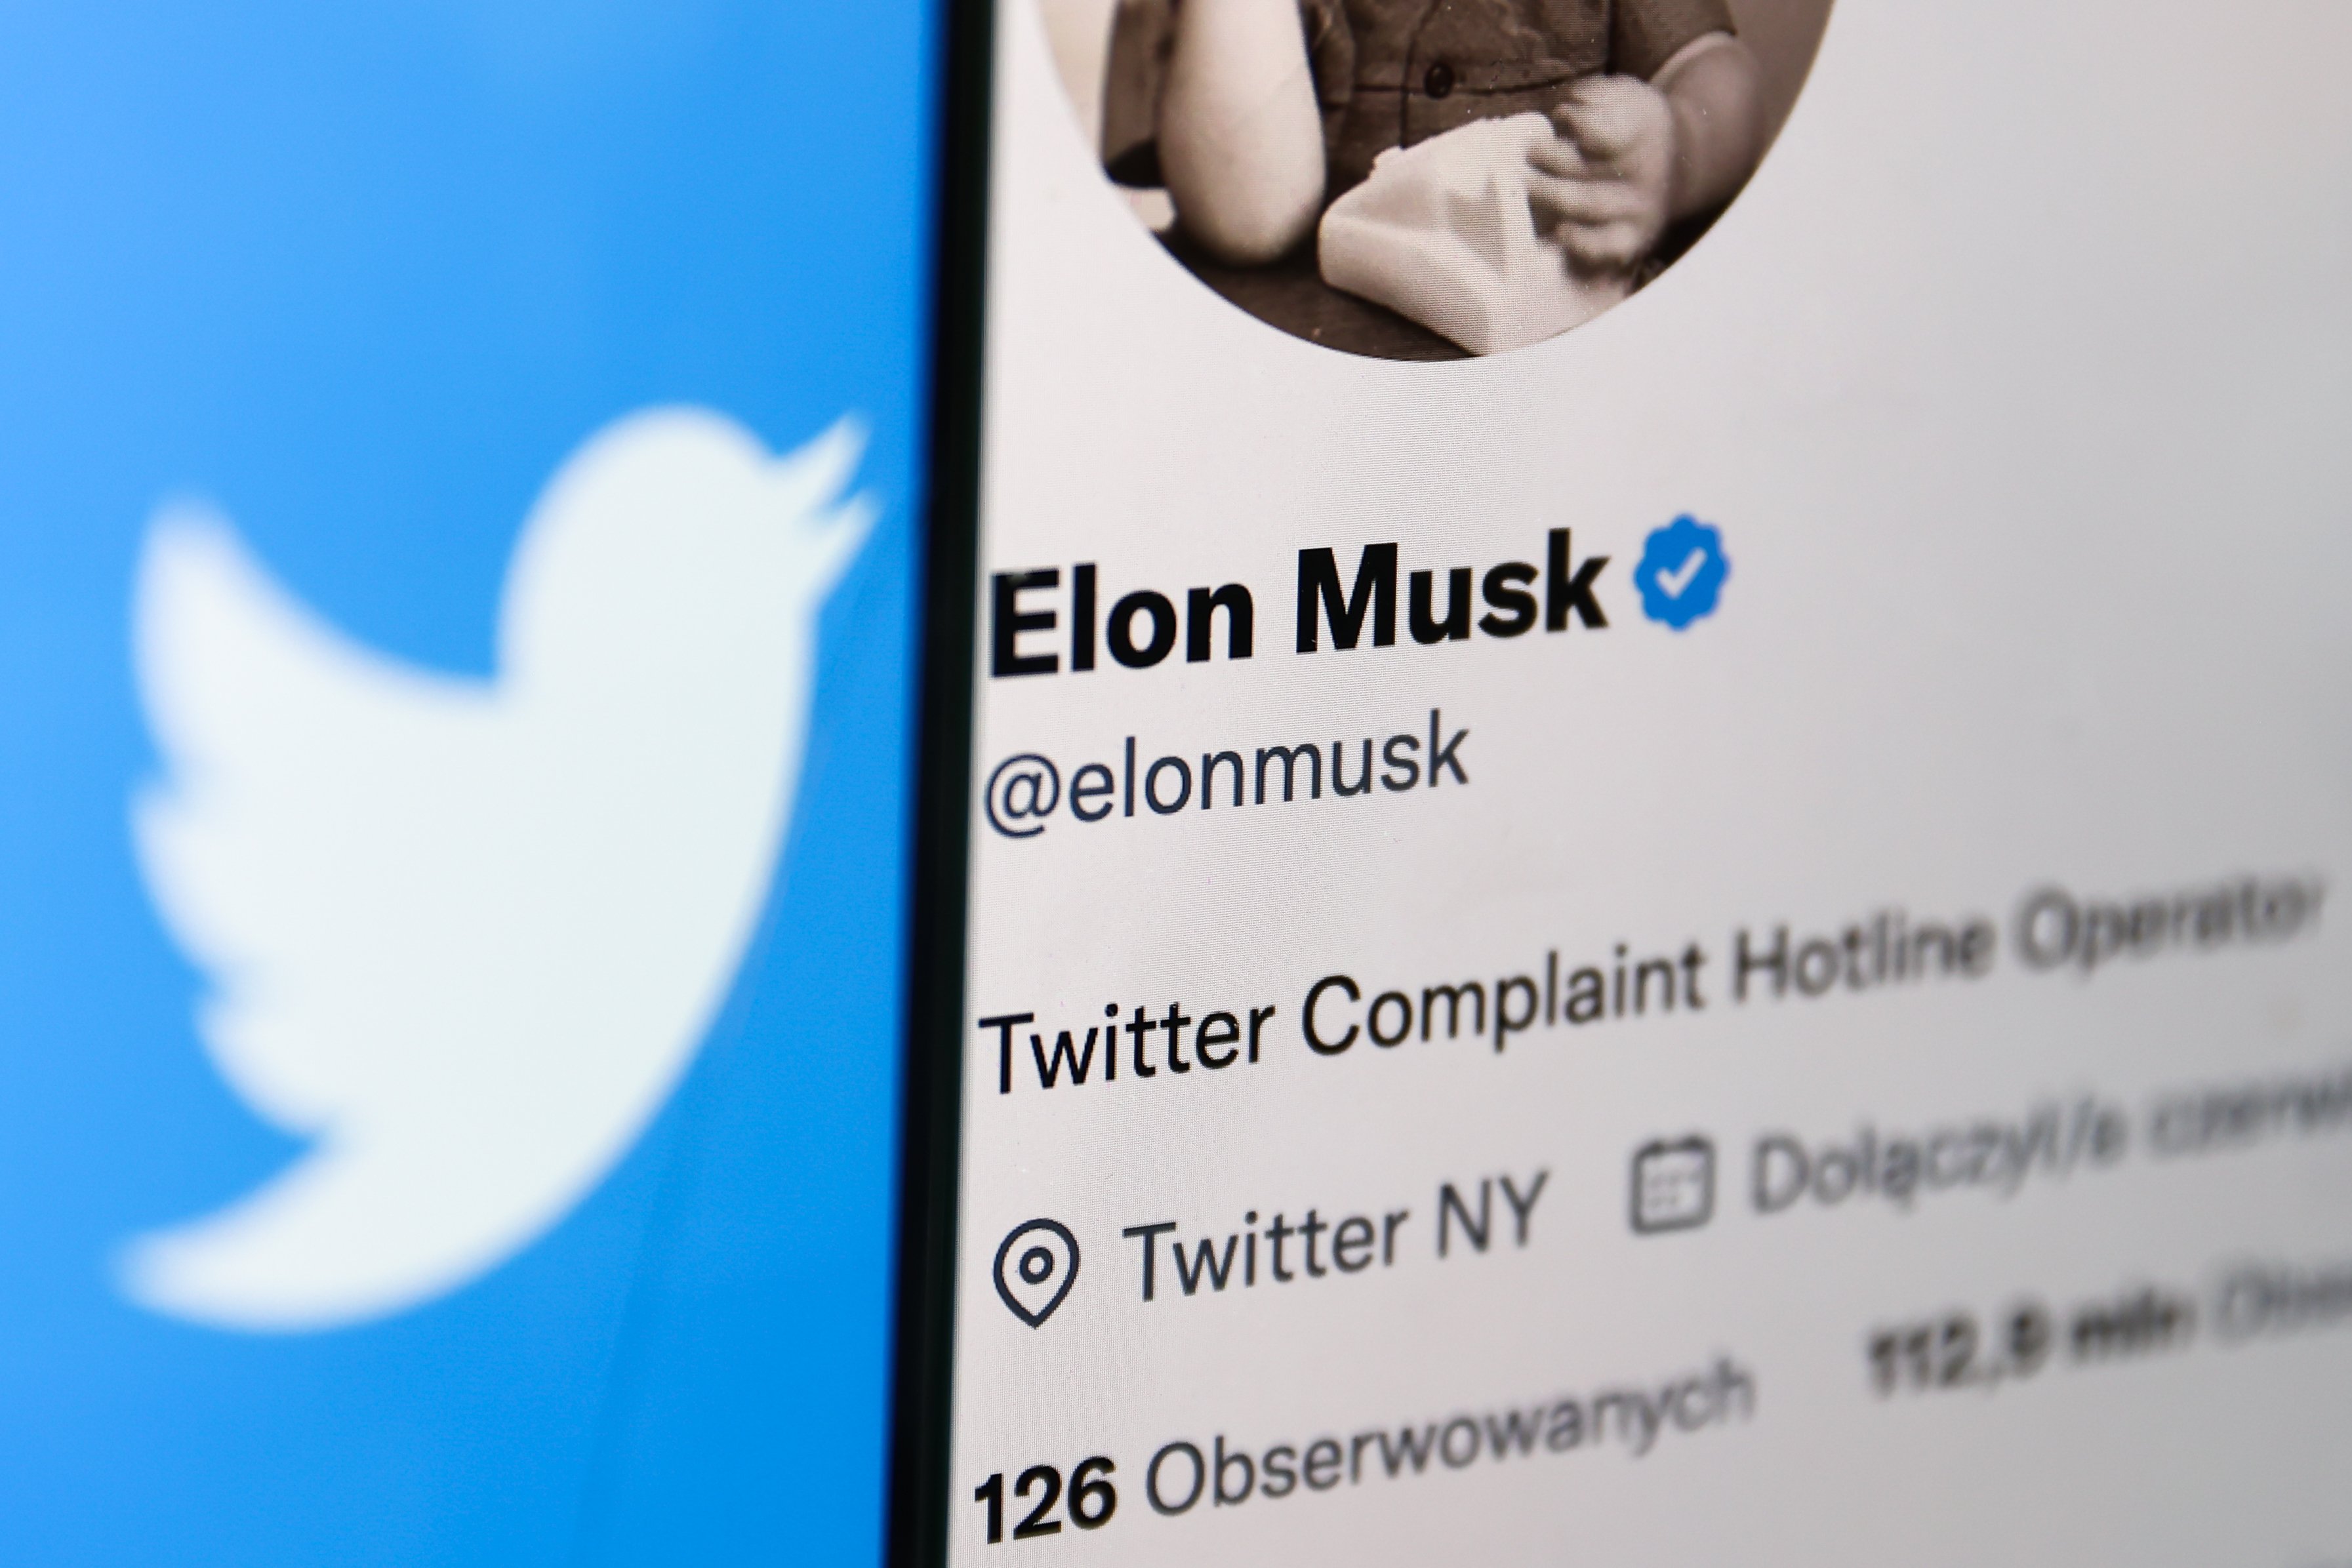 Elon Musk: Twitter Complaint Hotline